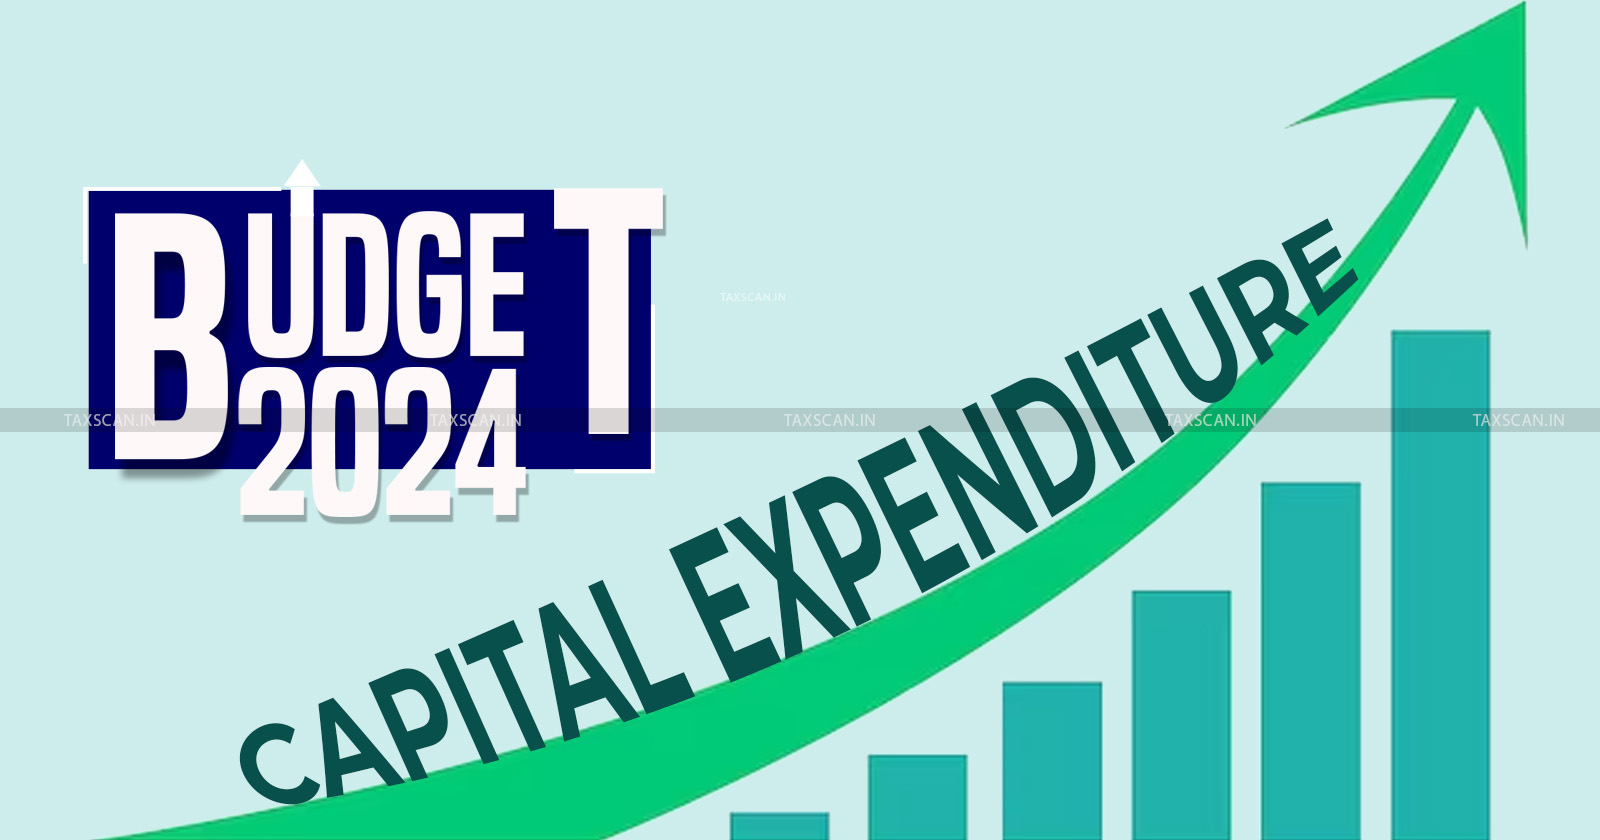 Budget 2024 - Interim Budget 2024 - Union Budget 2024 - Budget 2024 live - Budget 2024 news - TAXSCAN